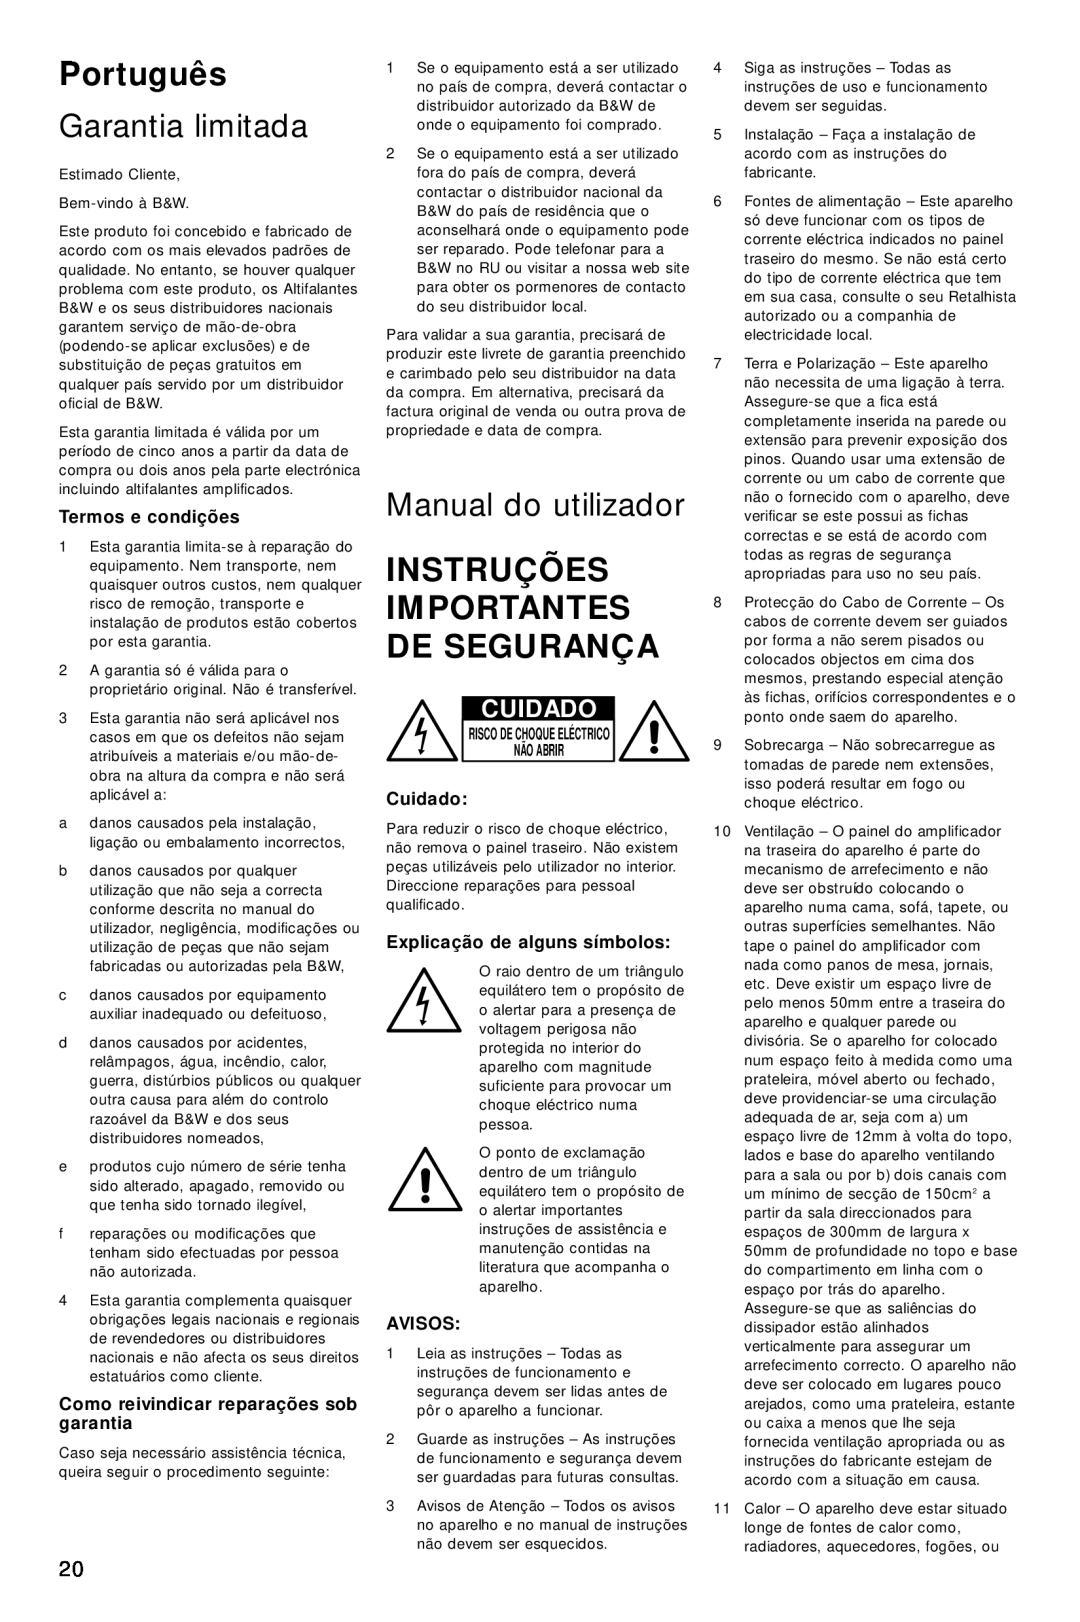 Bowers & Wilkins ASW800 Português, Garantia limitada, Manual do utilizador, Instruções Importantes De Segurança, Cuidado 